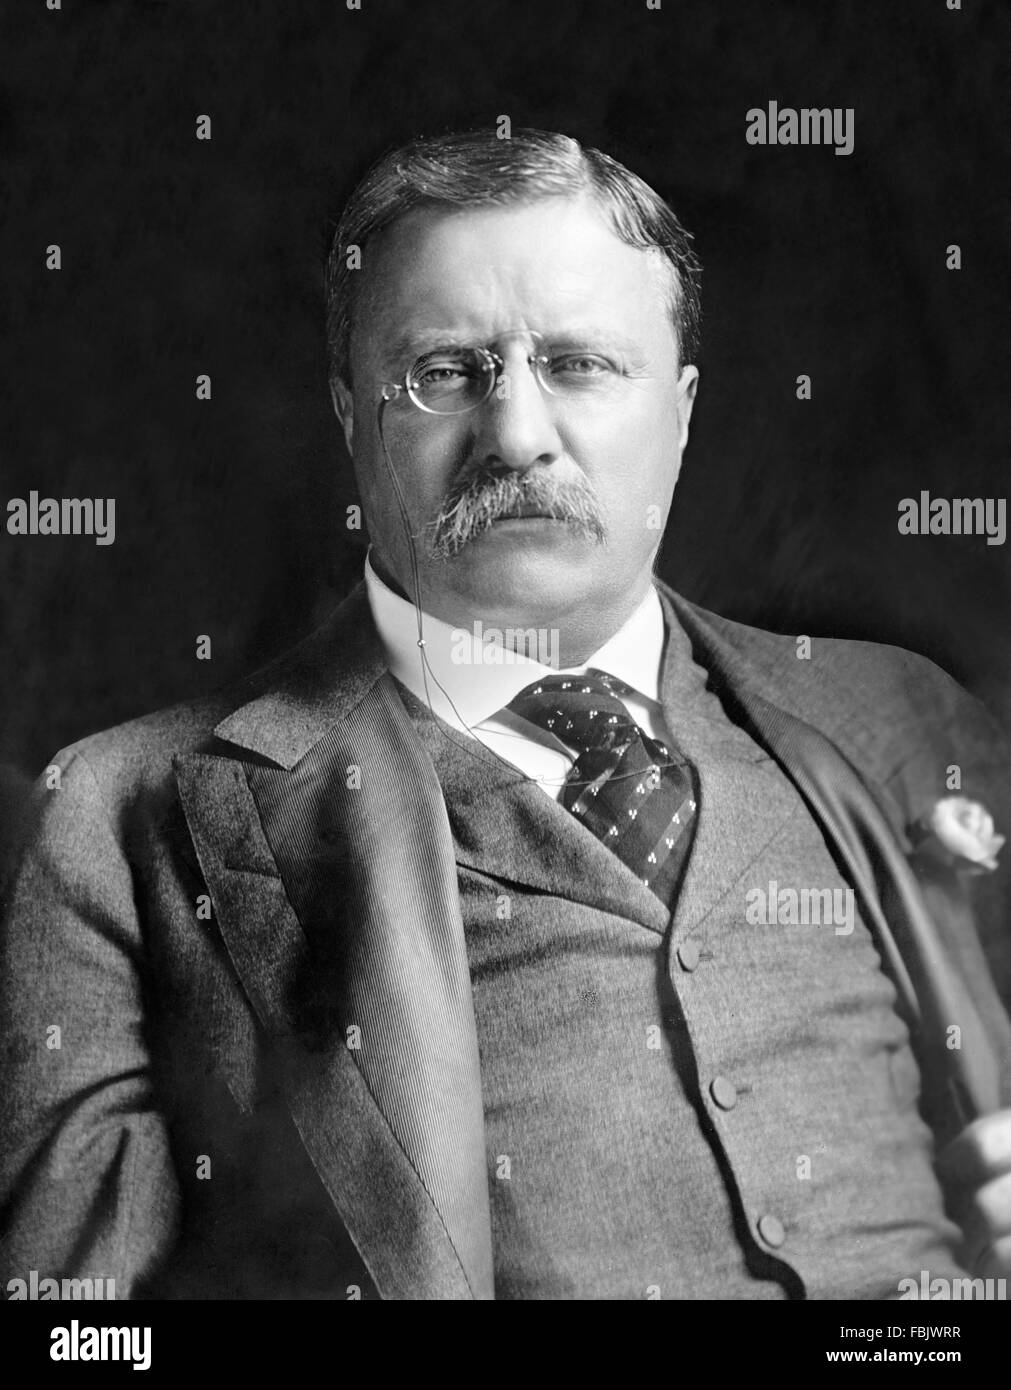 Teddy Roosevelt. Porträt von Theodore Roosevelt, dem 26. US-Präsidenten, c.1907 Stockfoto